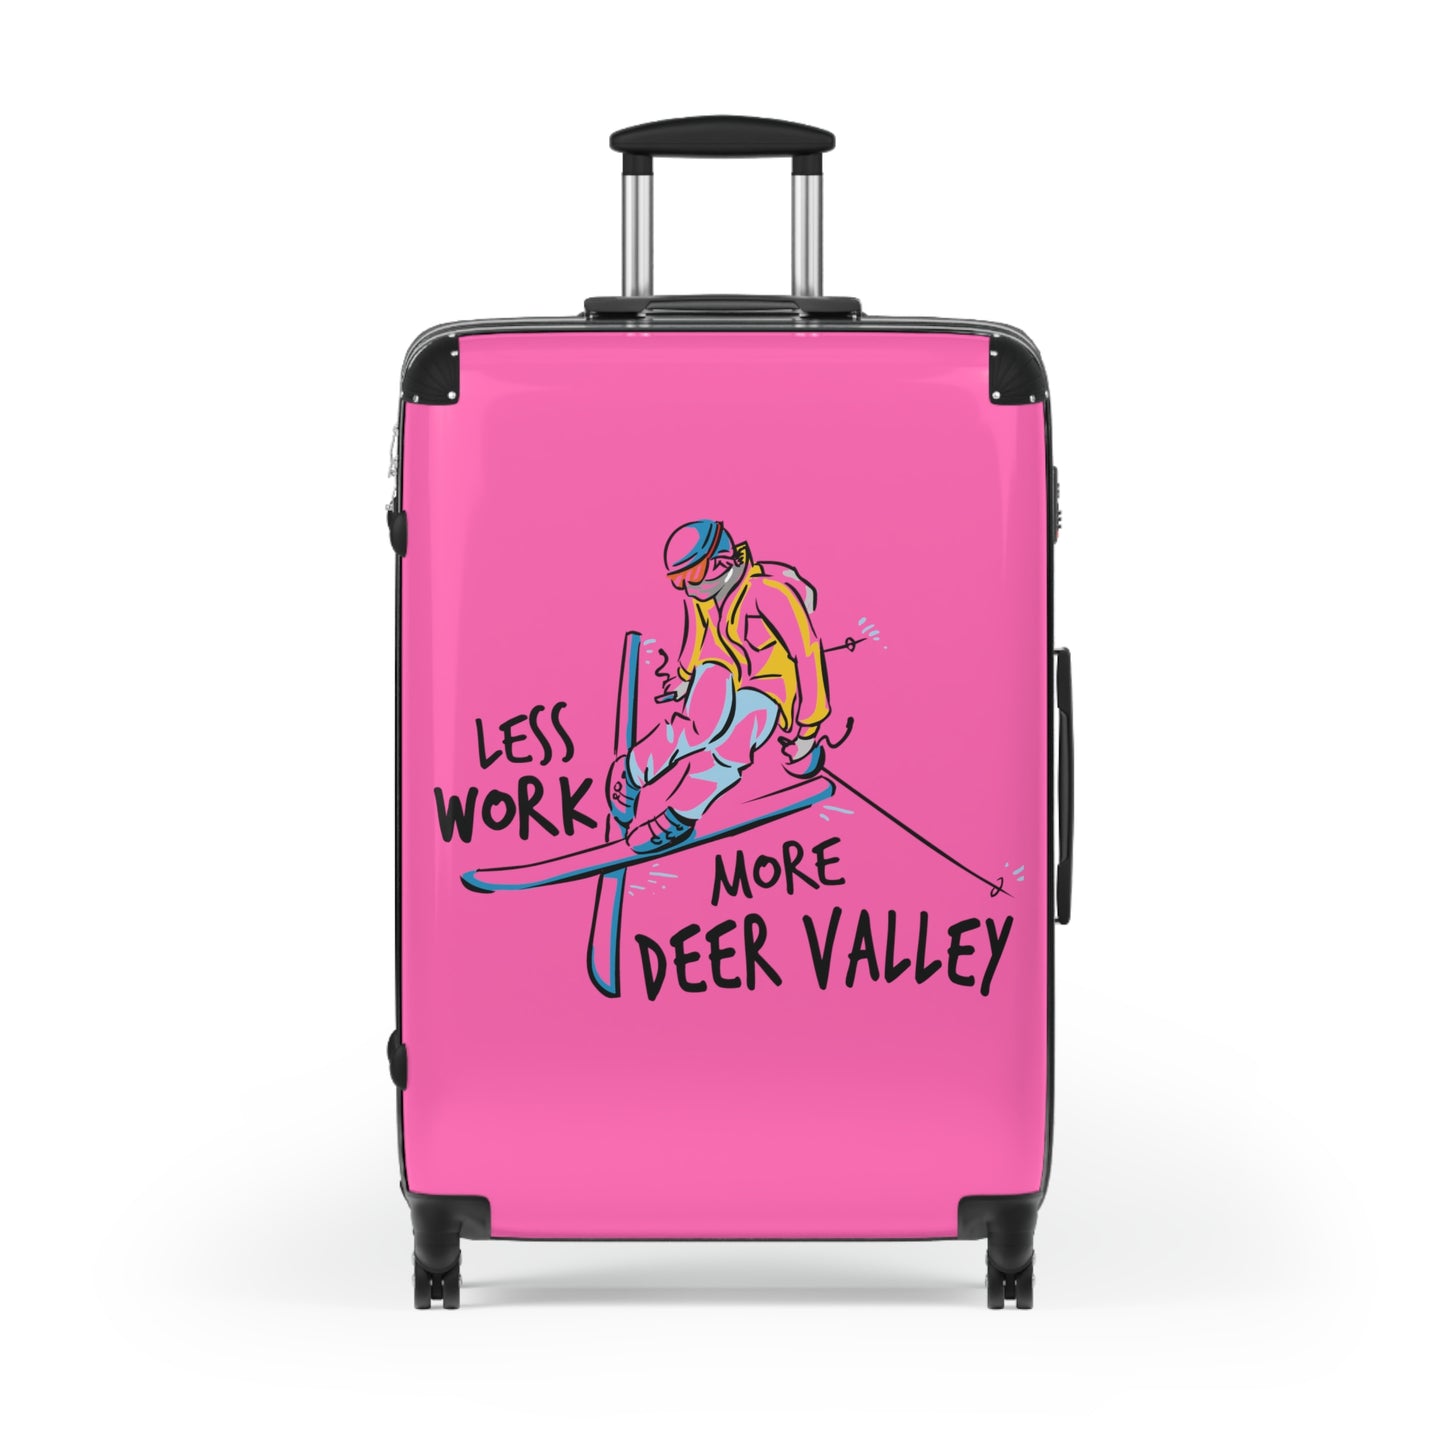 Less Work More Deer Valley Custom Luggage